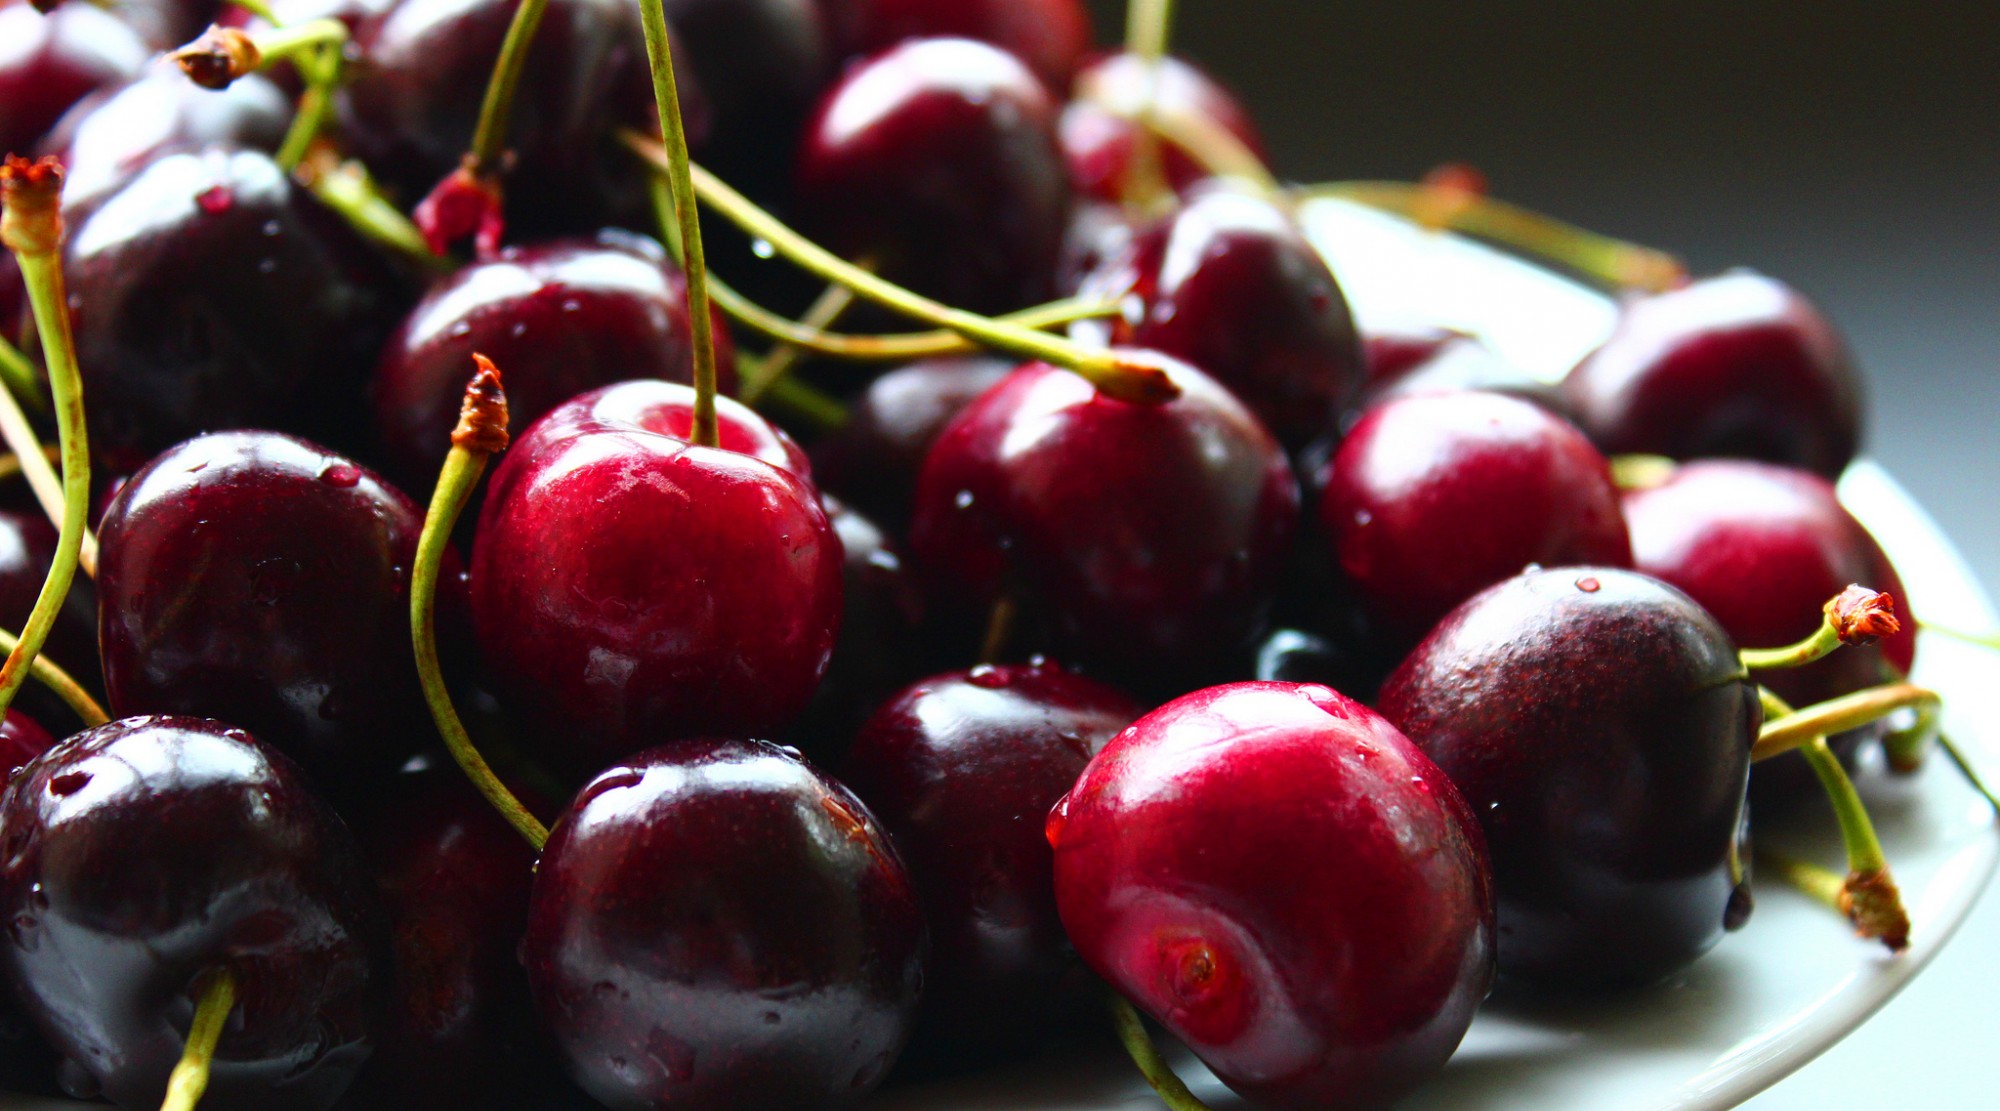 5 ideas for using fresh cherries | The Splendid Table